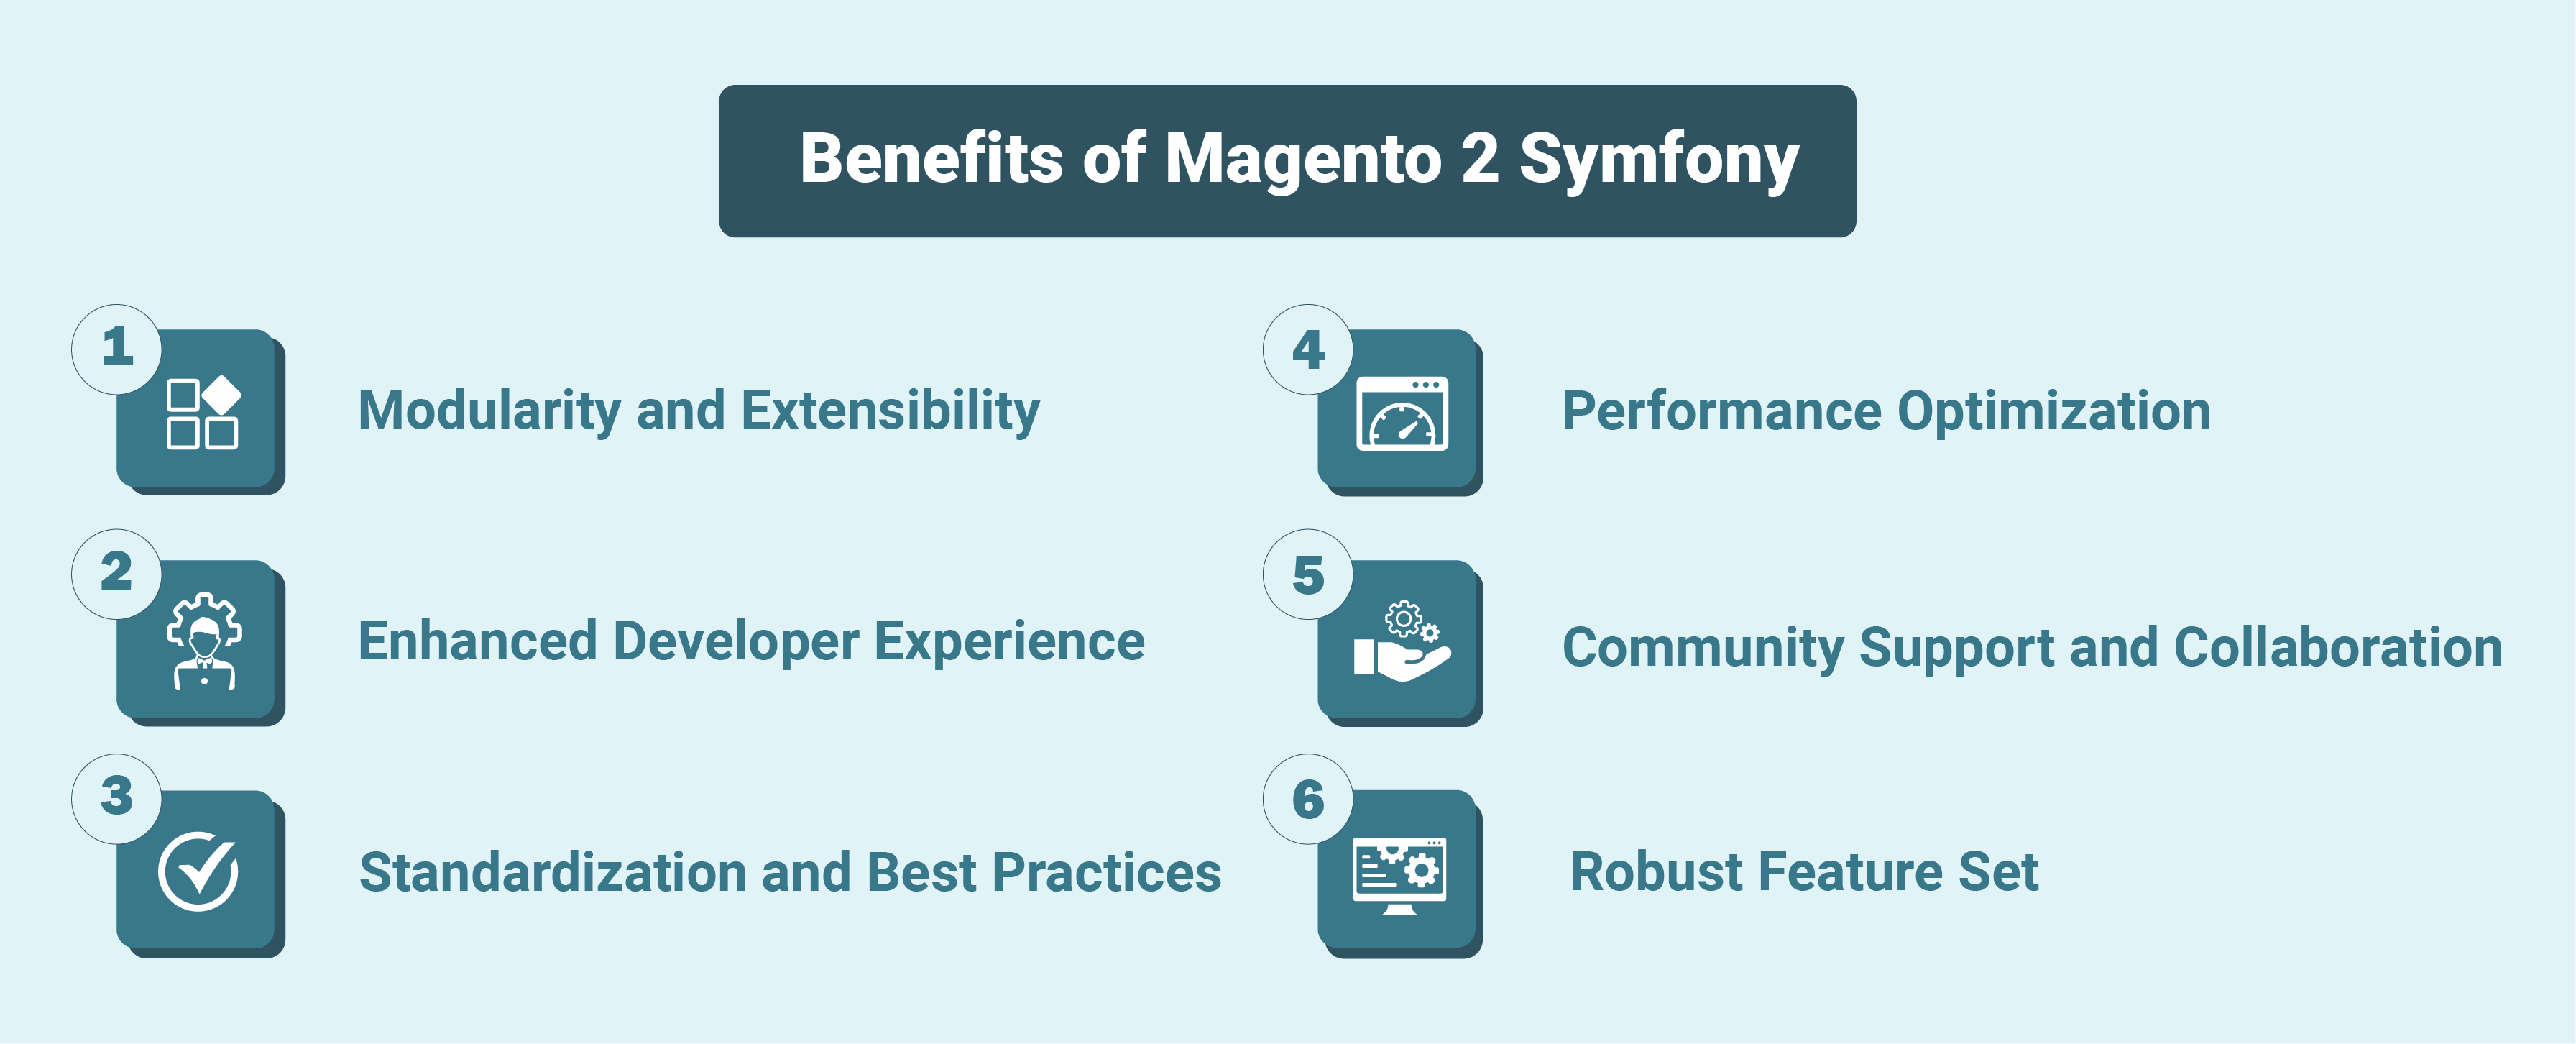 Benefits of Magento 2 Symfony